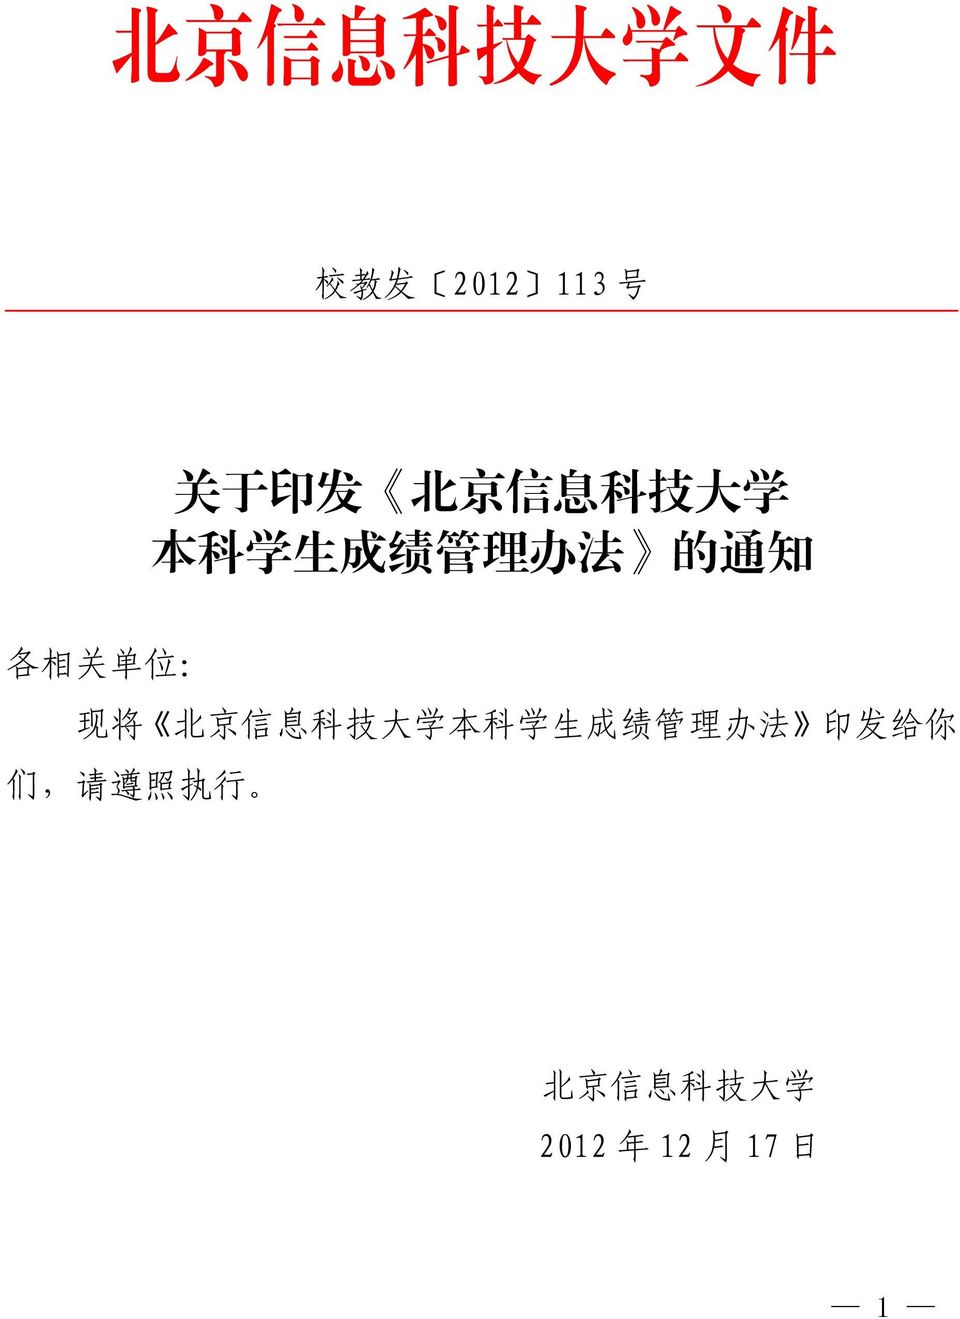 : 现 将 北 京 信 息 科 技 大 学 本 科 学 生 成 绩 管 理 办 法 印 发 给